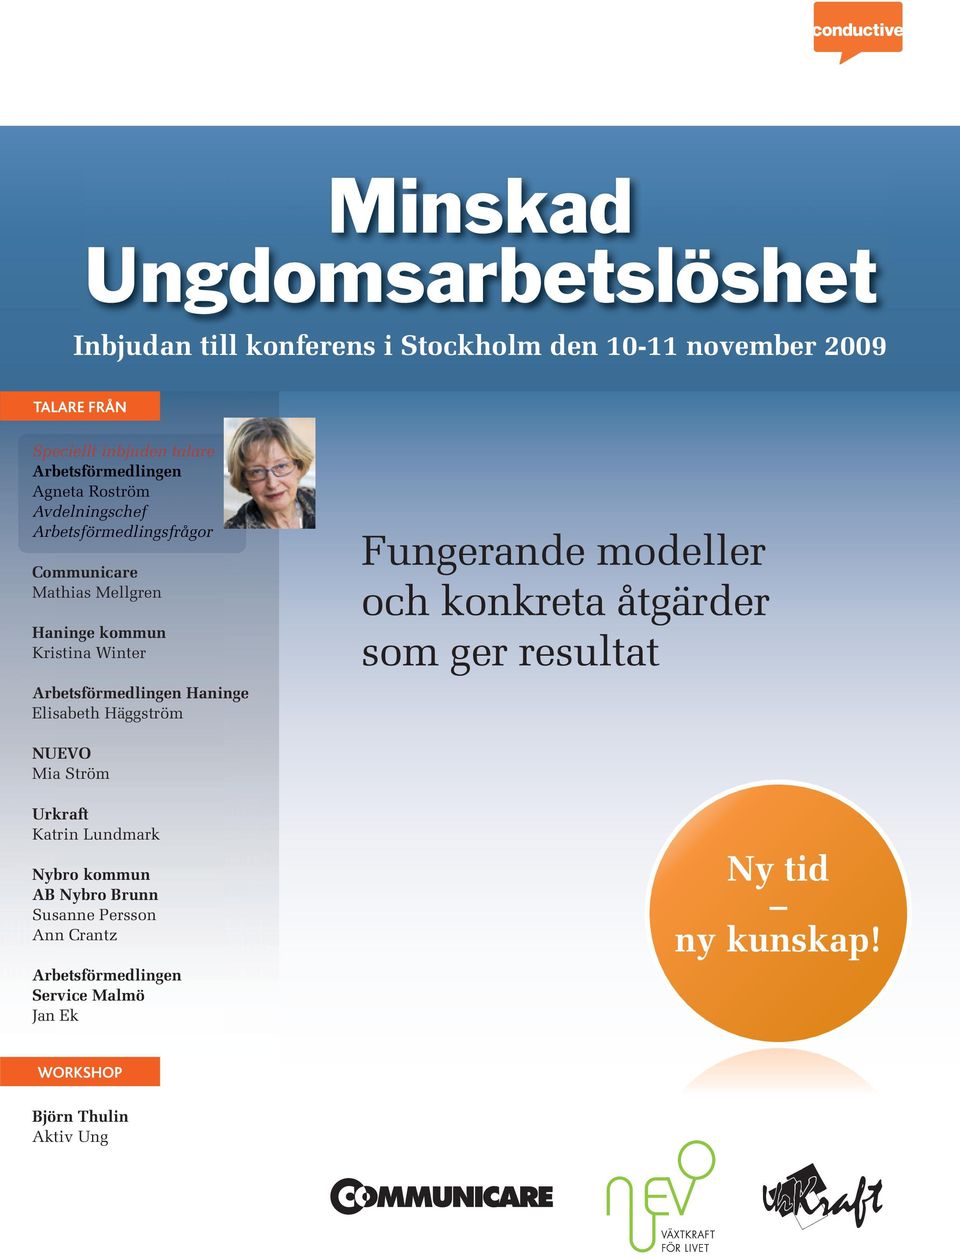 Winter Haninge Elisabeth Häggström Fungerande modeller och konkreta åtgärder som ger resultat NUEVO Mia Ström Urkraft